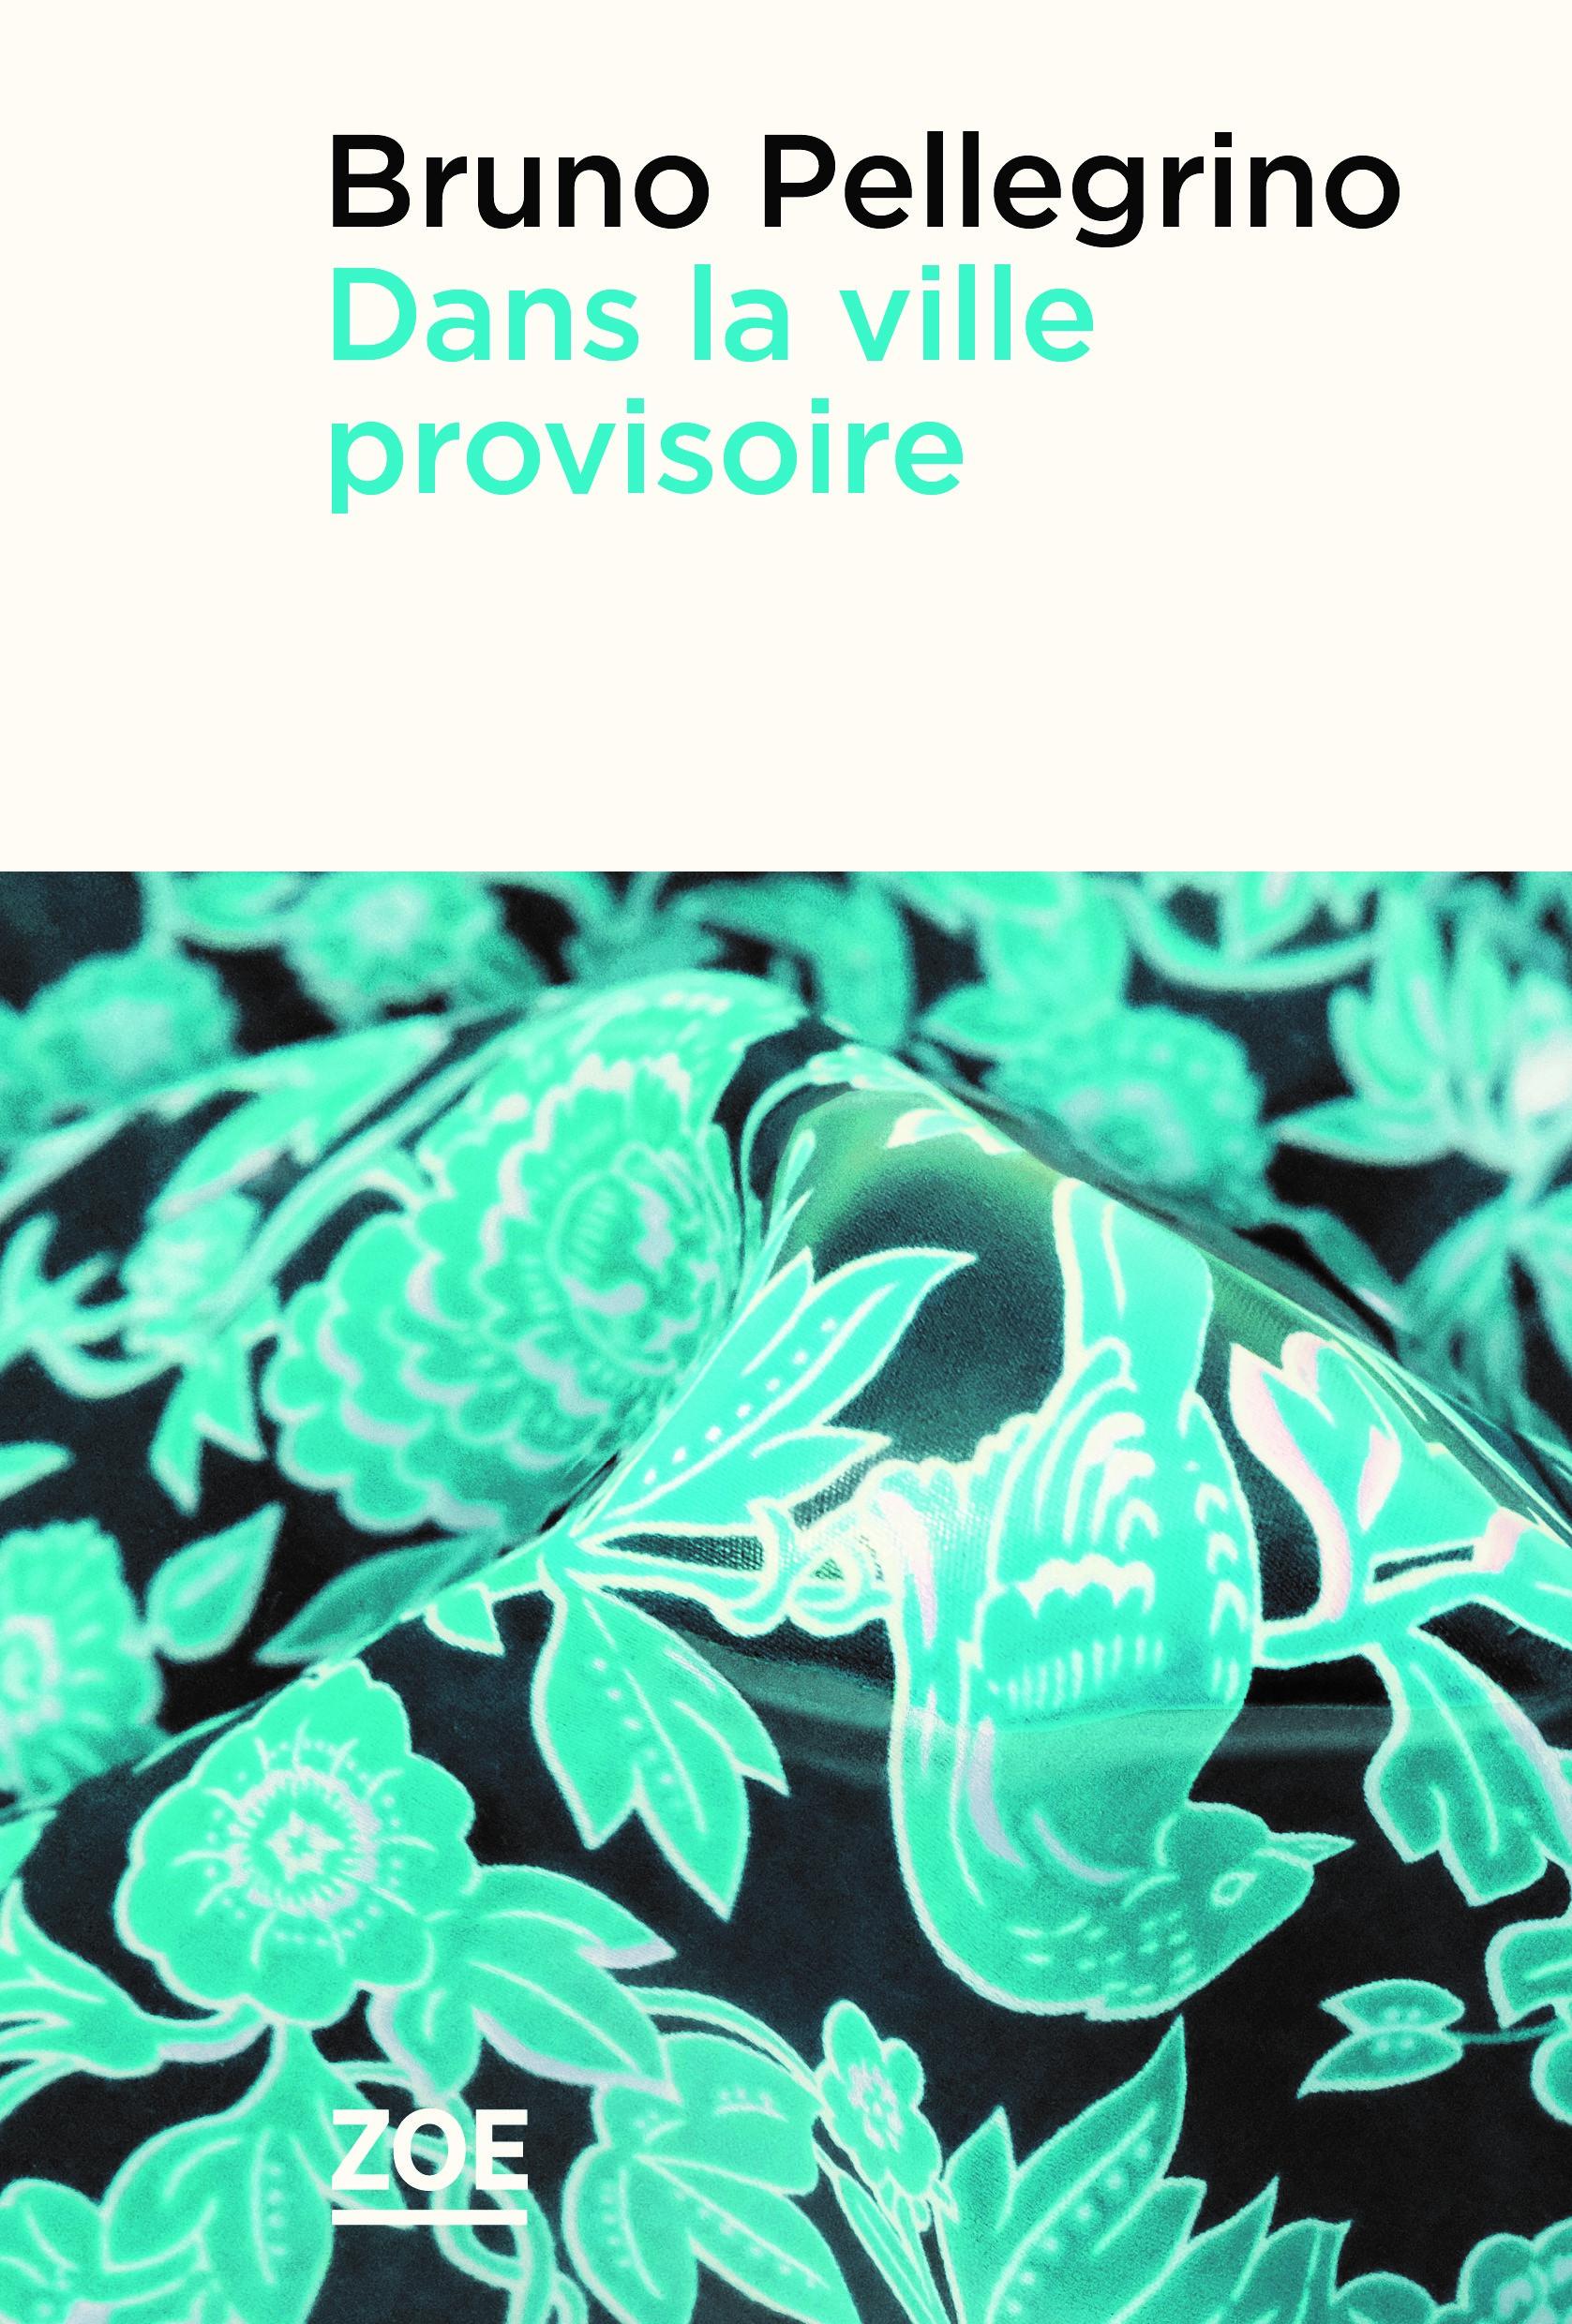 La couverture du livre "Dans la ville provisoire" de Bruno Pellegrino. [Editions Zoé]